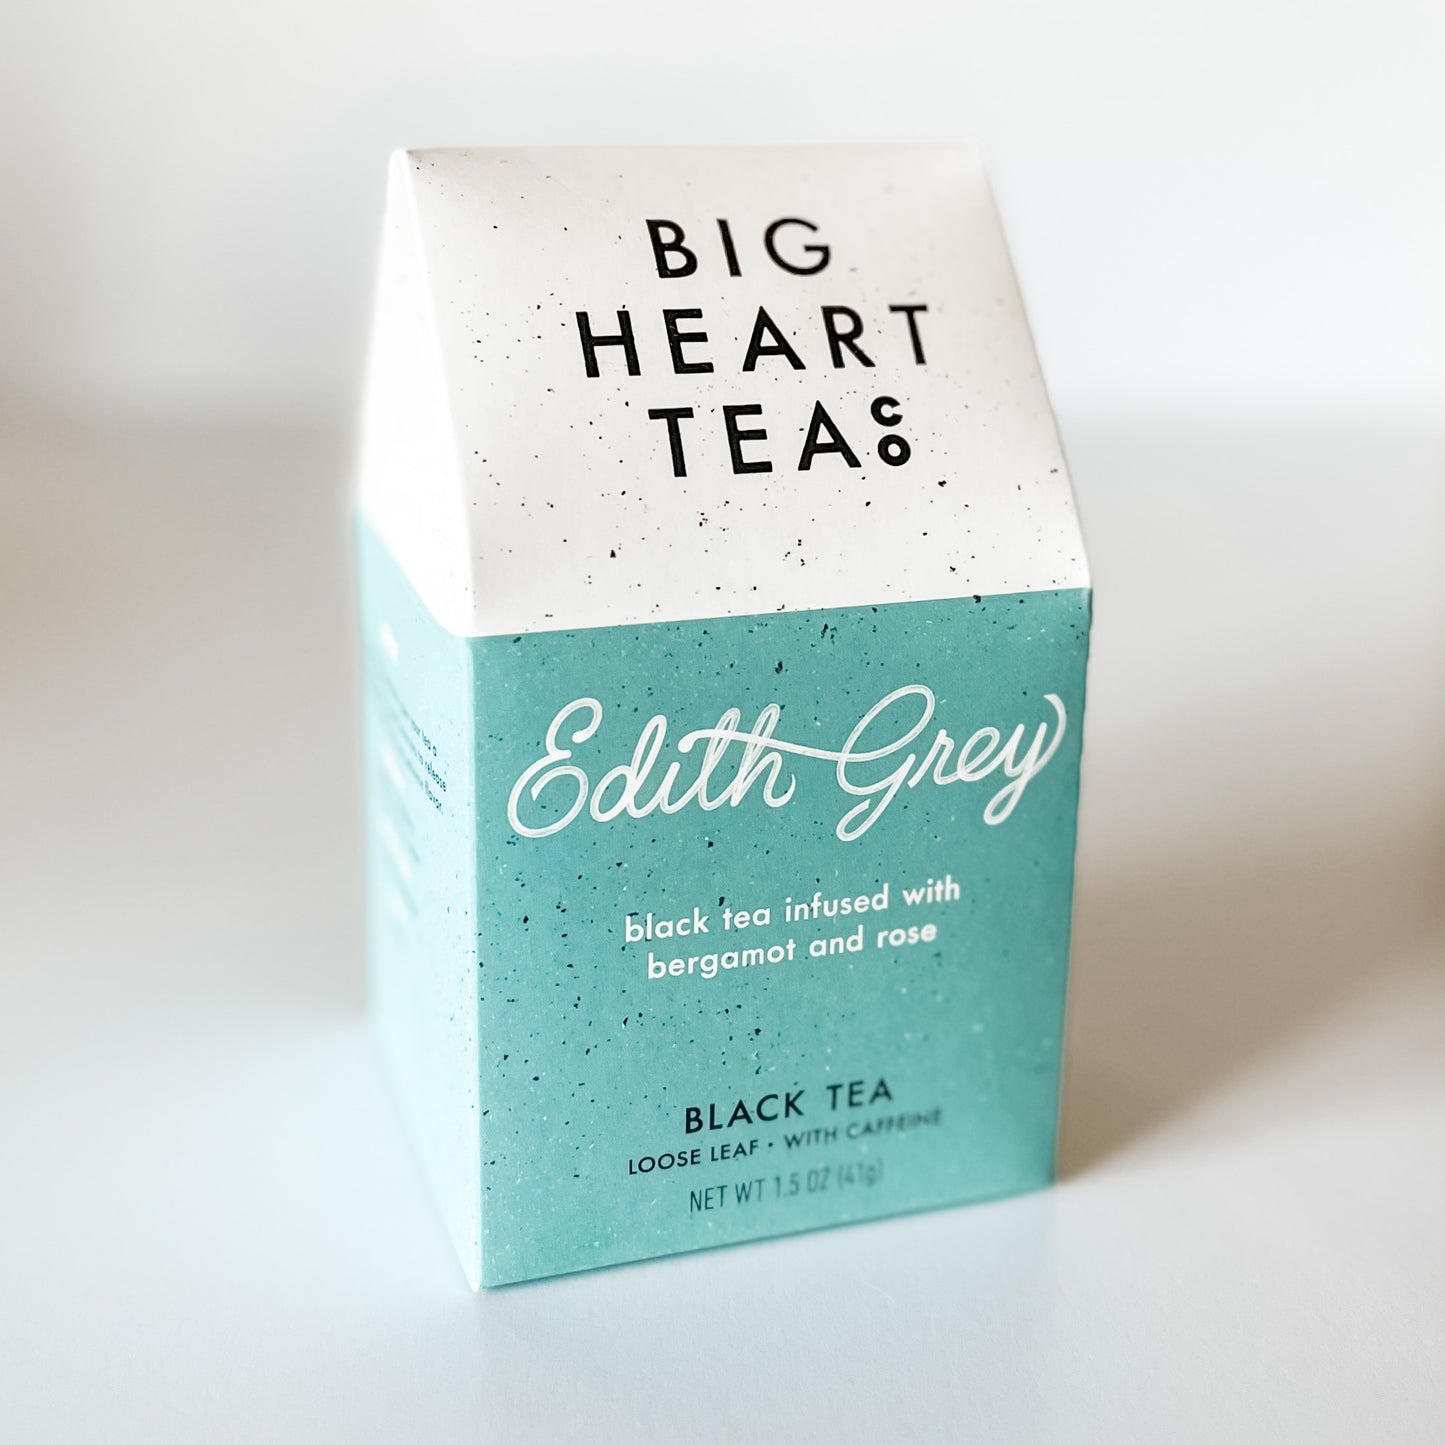 big heart tea co Edith grey